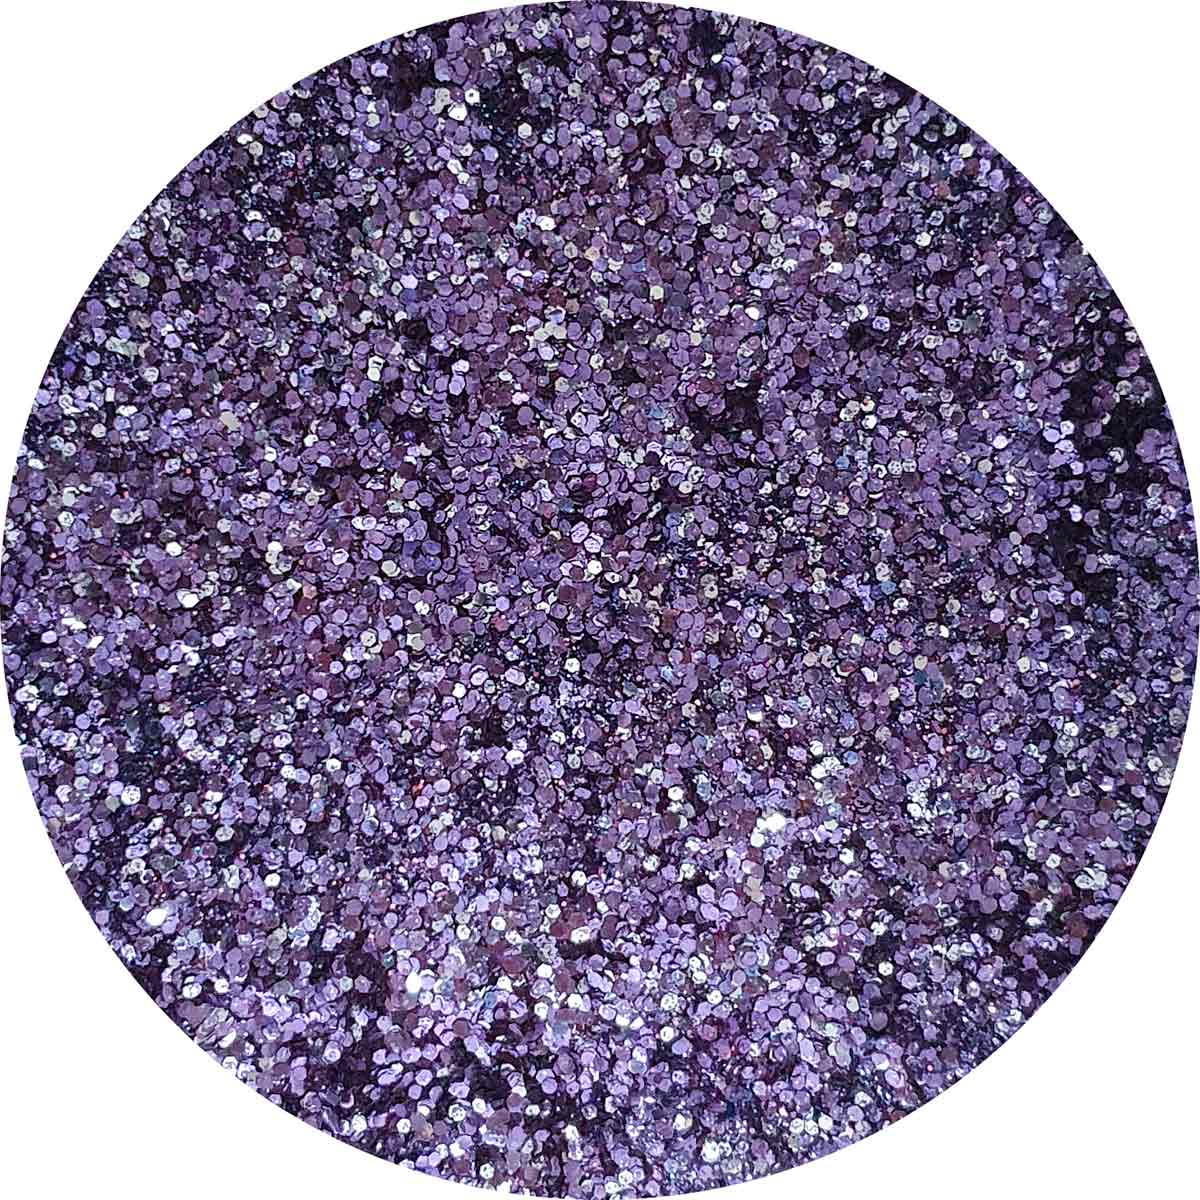 Paillette biodégradable pluie violette